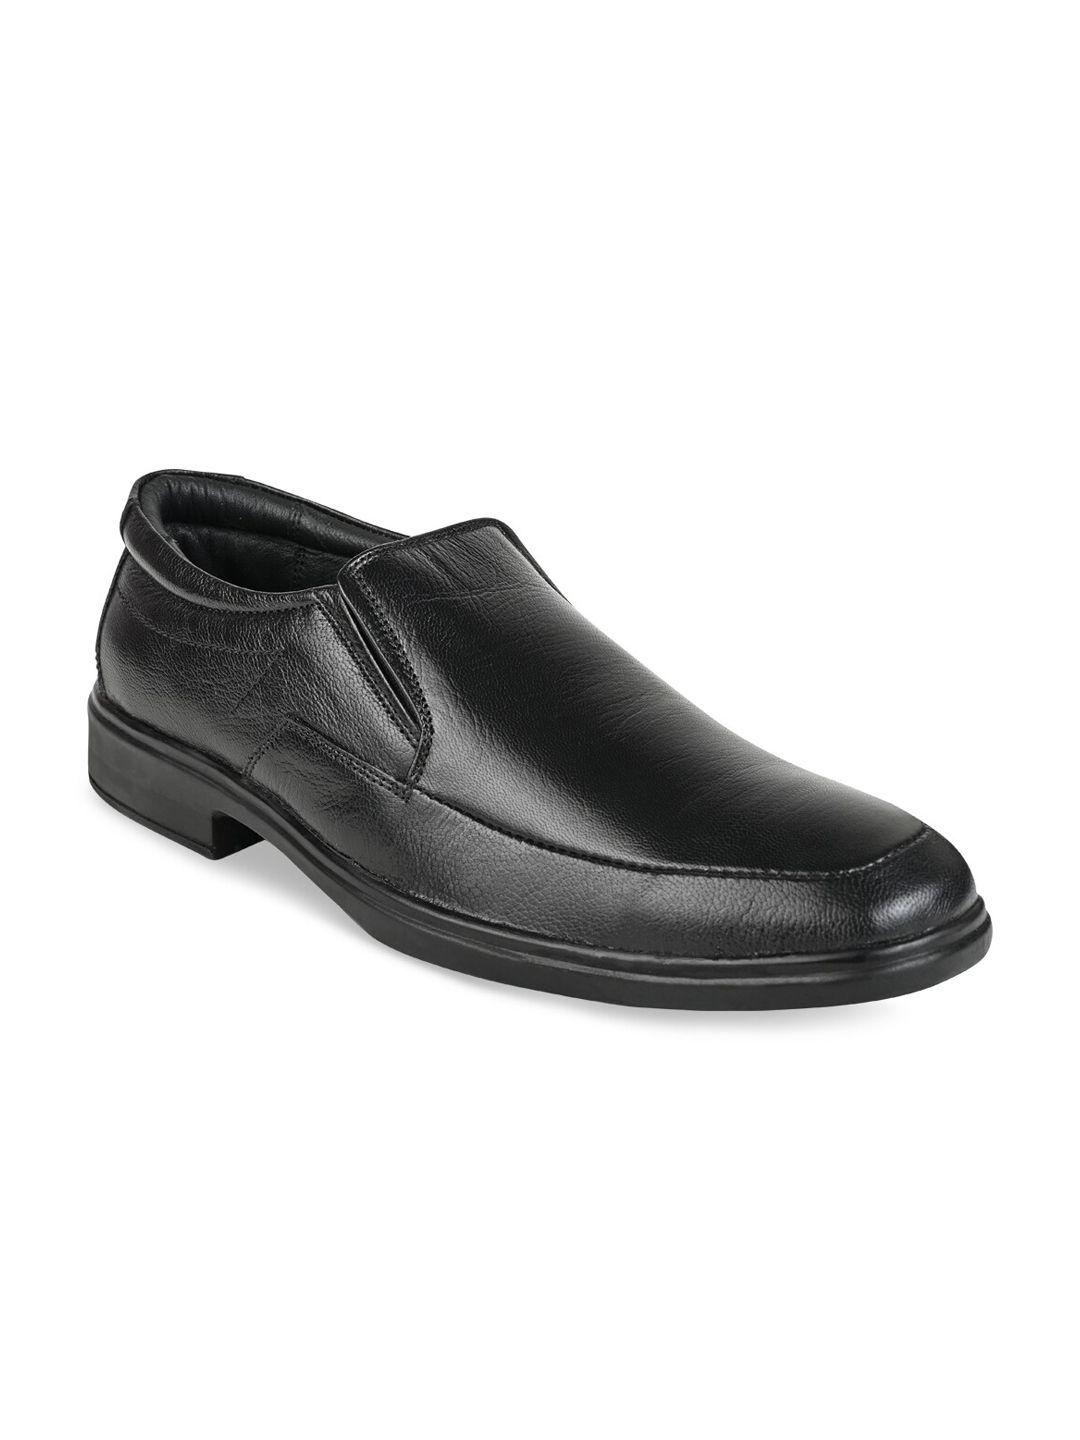 regal men black solid formal slip-on formal shoes